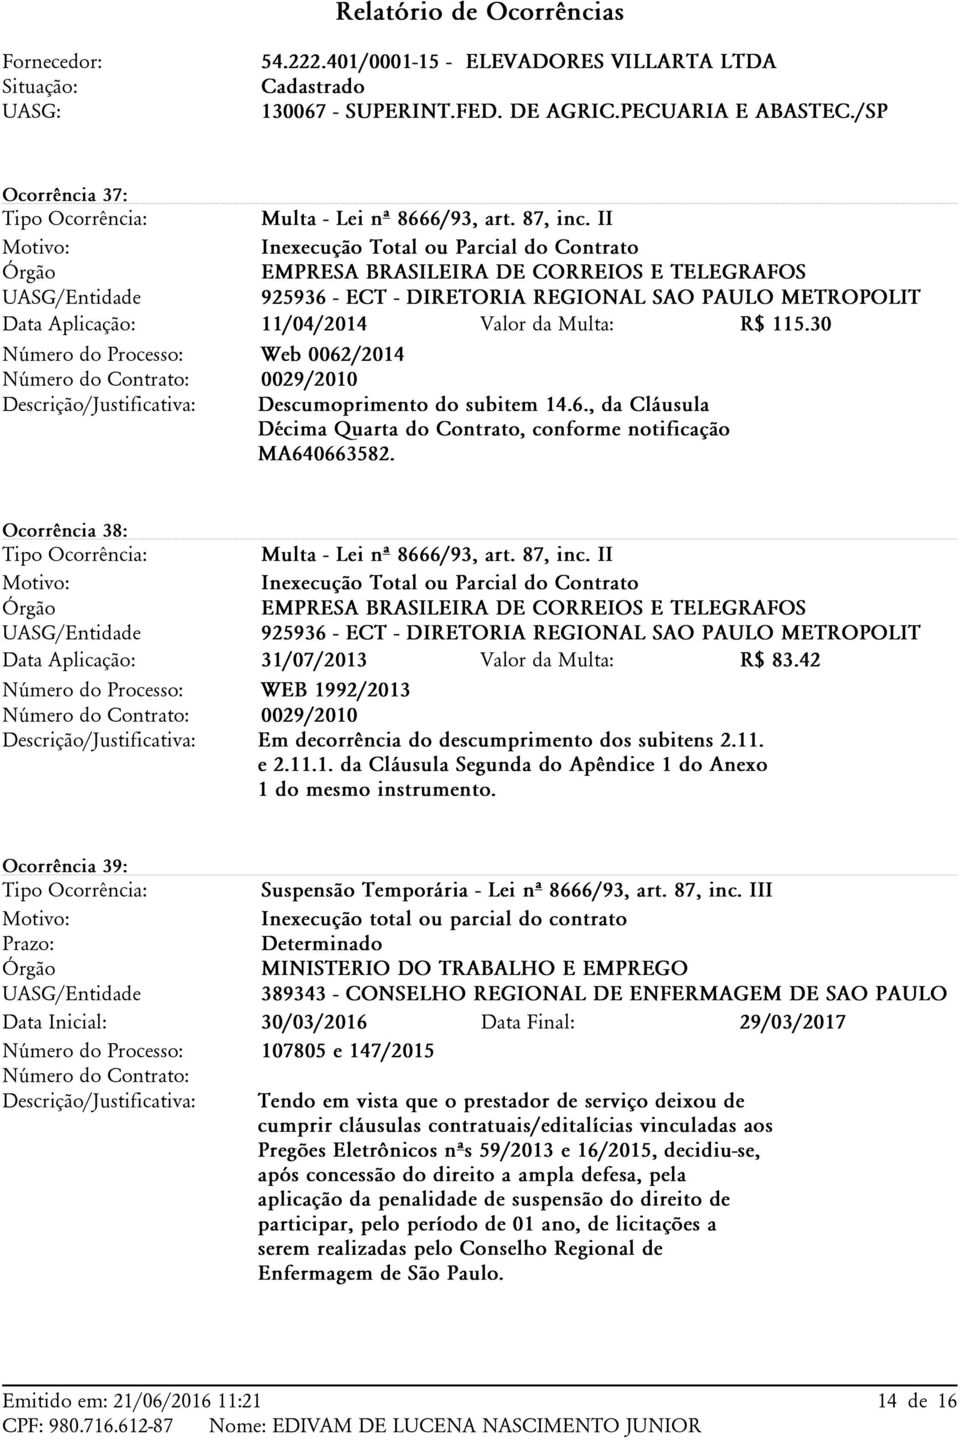 Ocorrência 38: EMPRESA BRASILEIRA DE CORREIOS E TELEGRAFOS 925936 - ECT - DIRETORIA REGIONAL SAO PAULO METROPOLIT 31/07/2013 Valor da Multa: R$ 83.